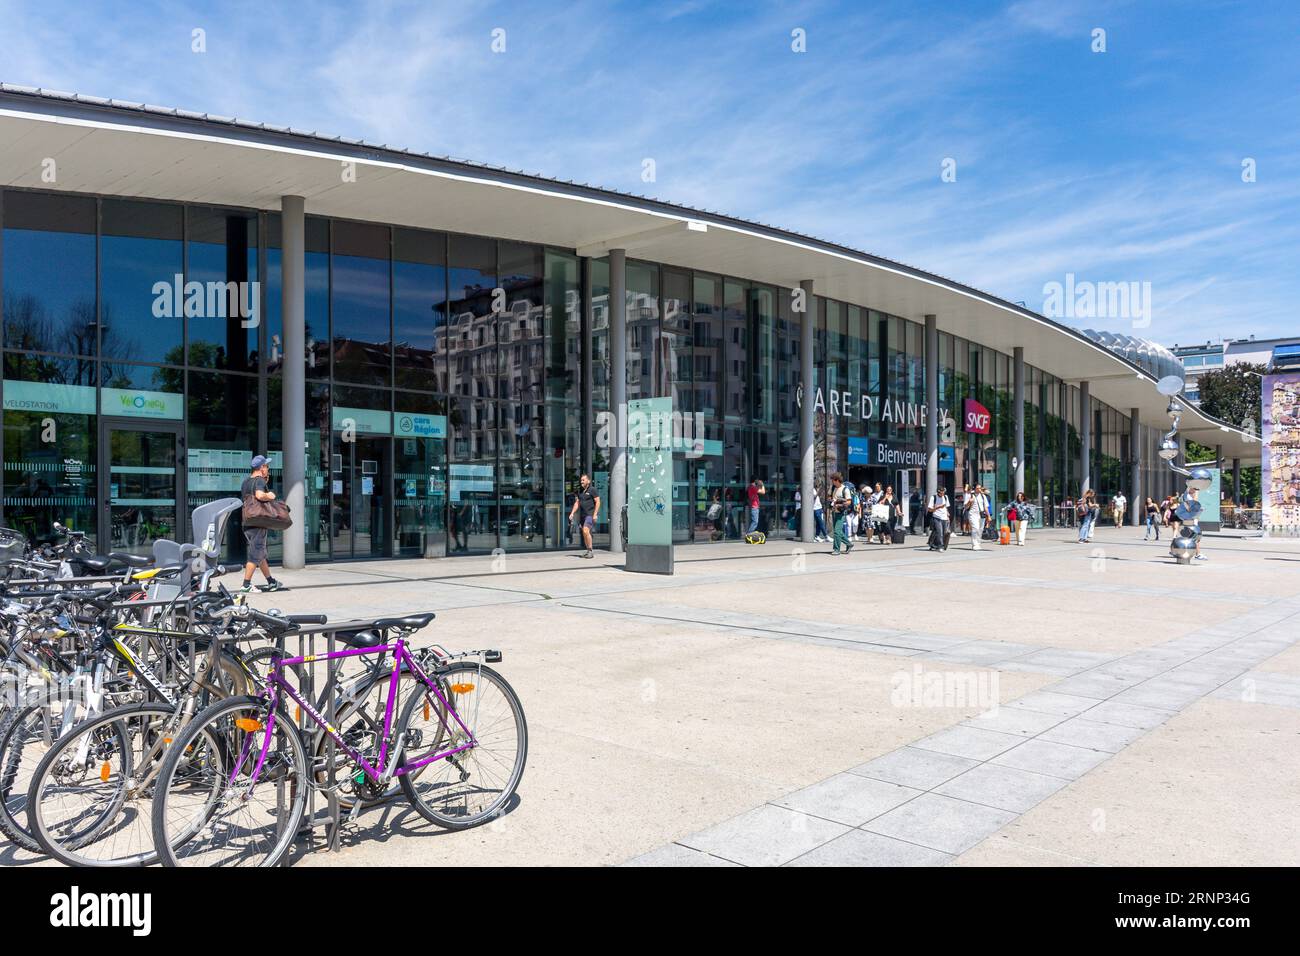 Gare d'Annecy (Railway Station), Place de La Gare, Annecy, Haute-Savoie, Auvergne-Rhône-Alpes, France Stock Photo